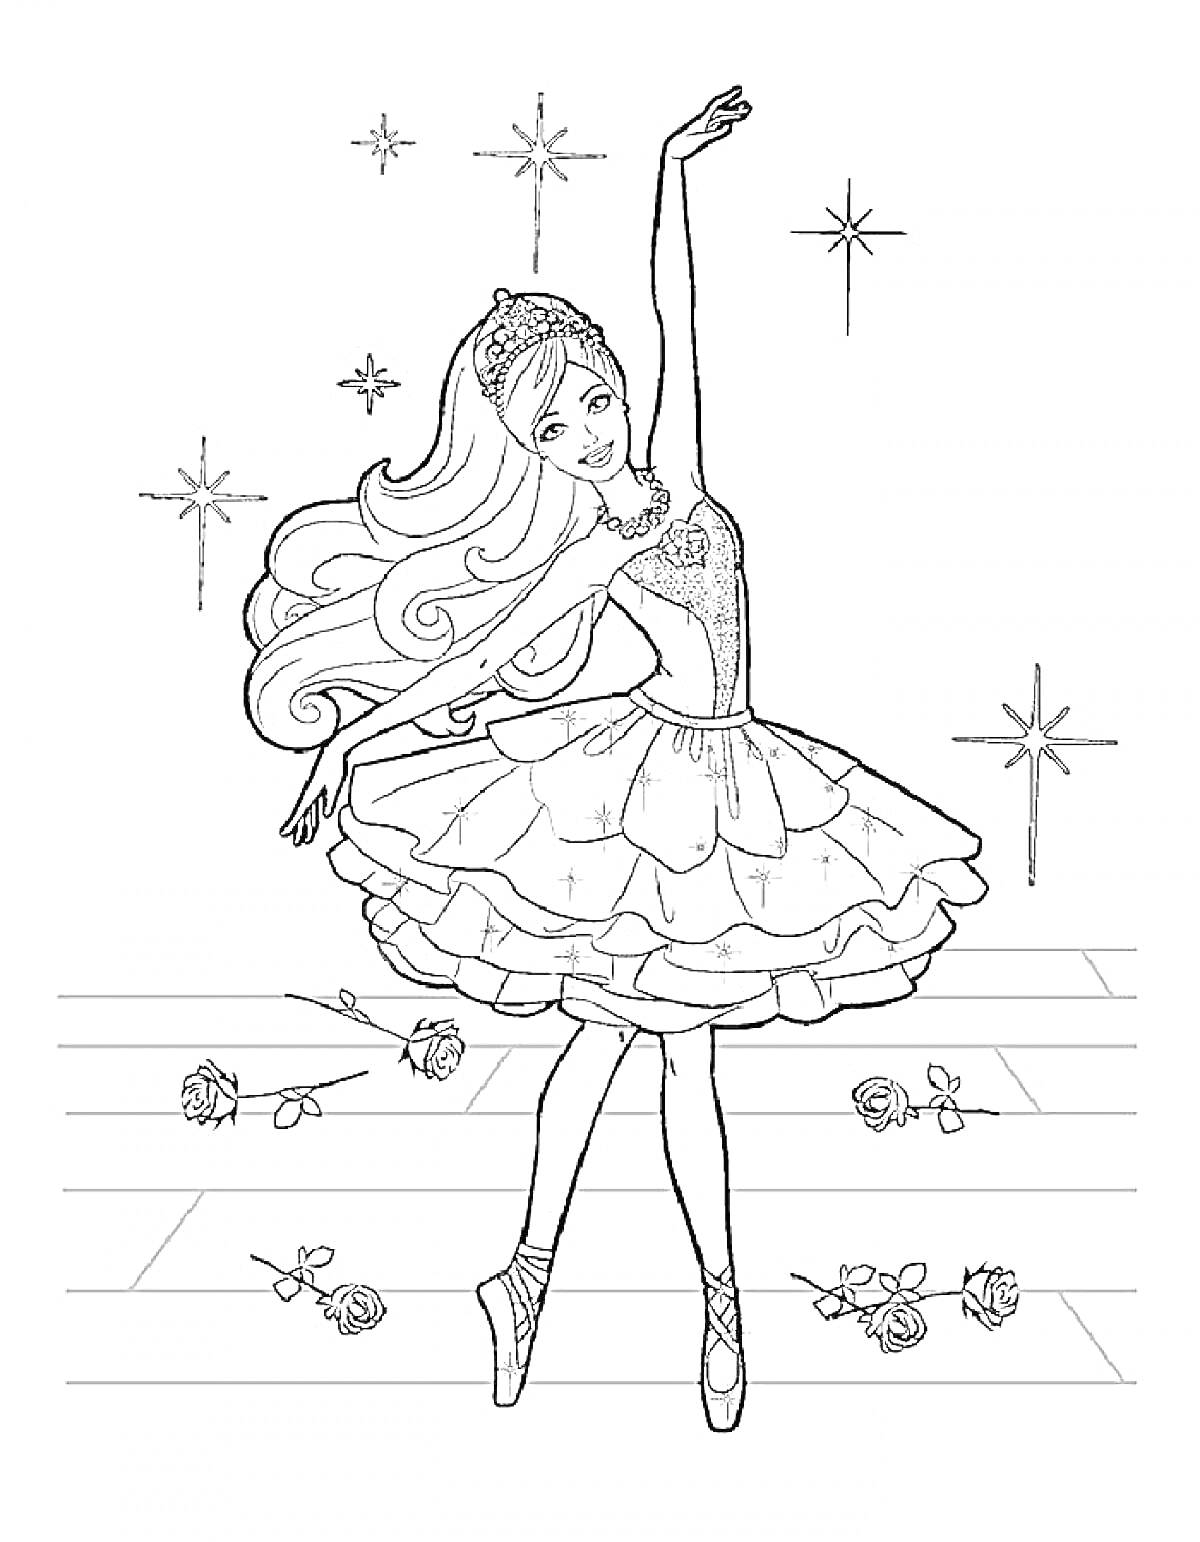 Раскраска Танцовщица в балетной пачке на сцене с разбросанными розами и звездами на заднем плане